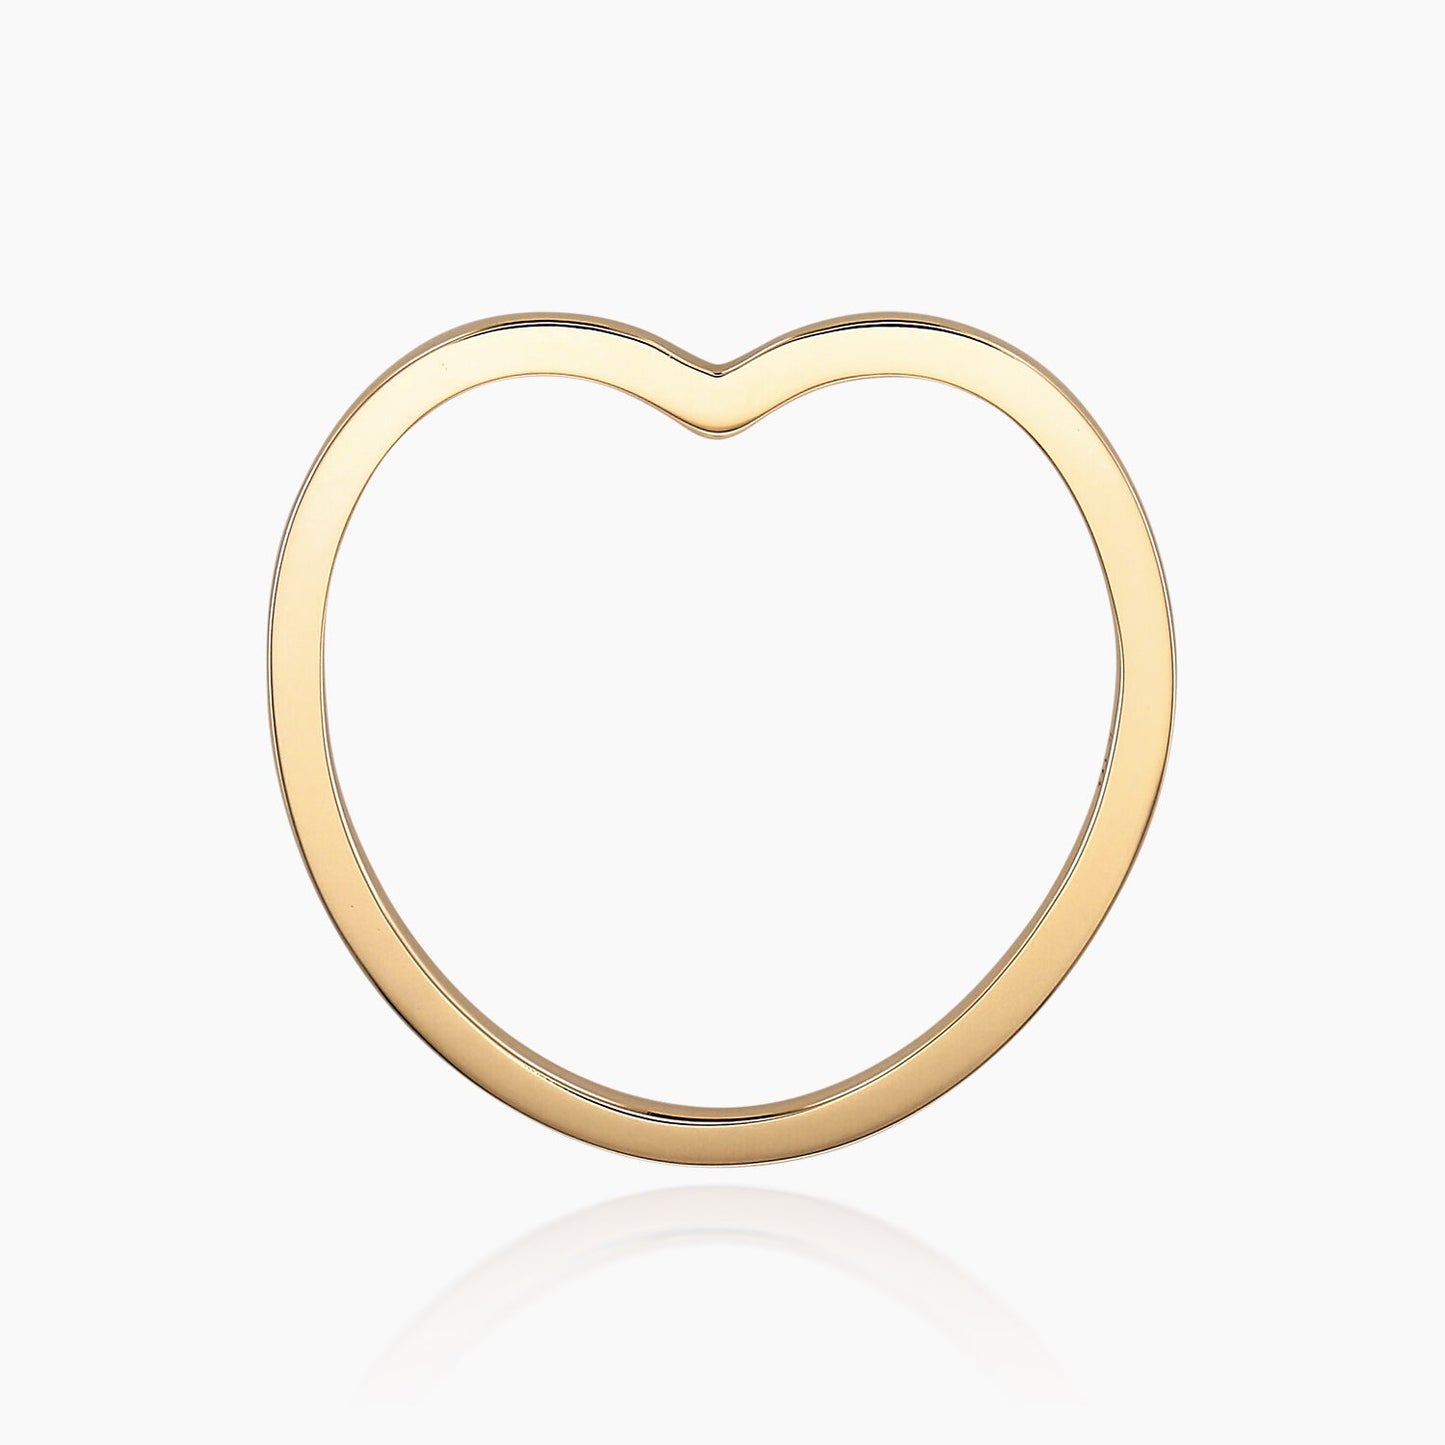 【ホワイトゴールド】リング [ハートシルエット]/Heart Silhouette Ring